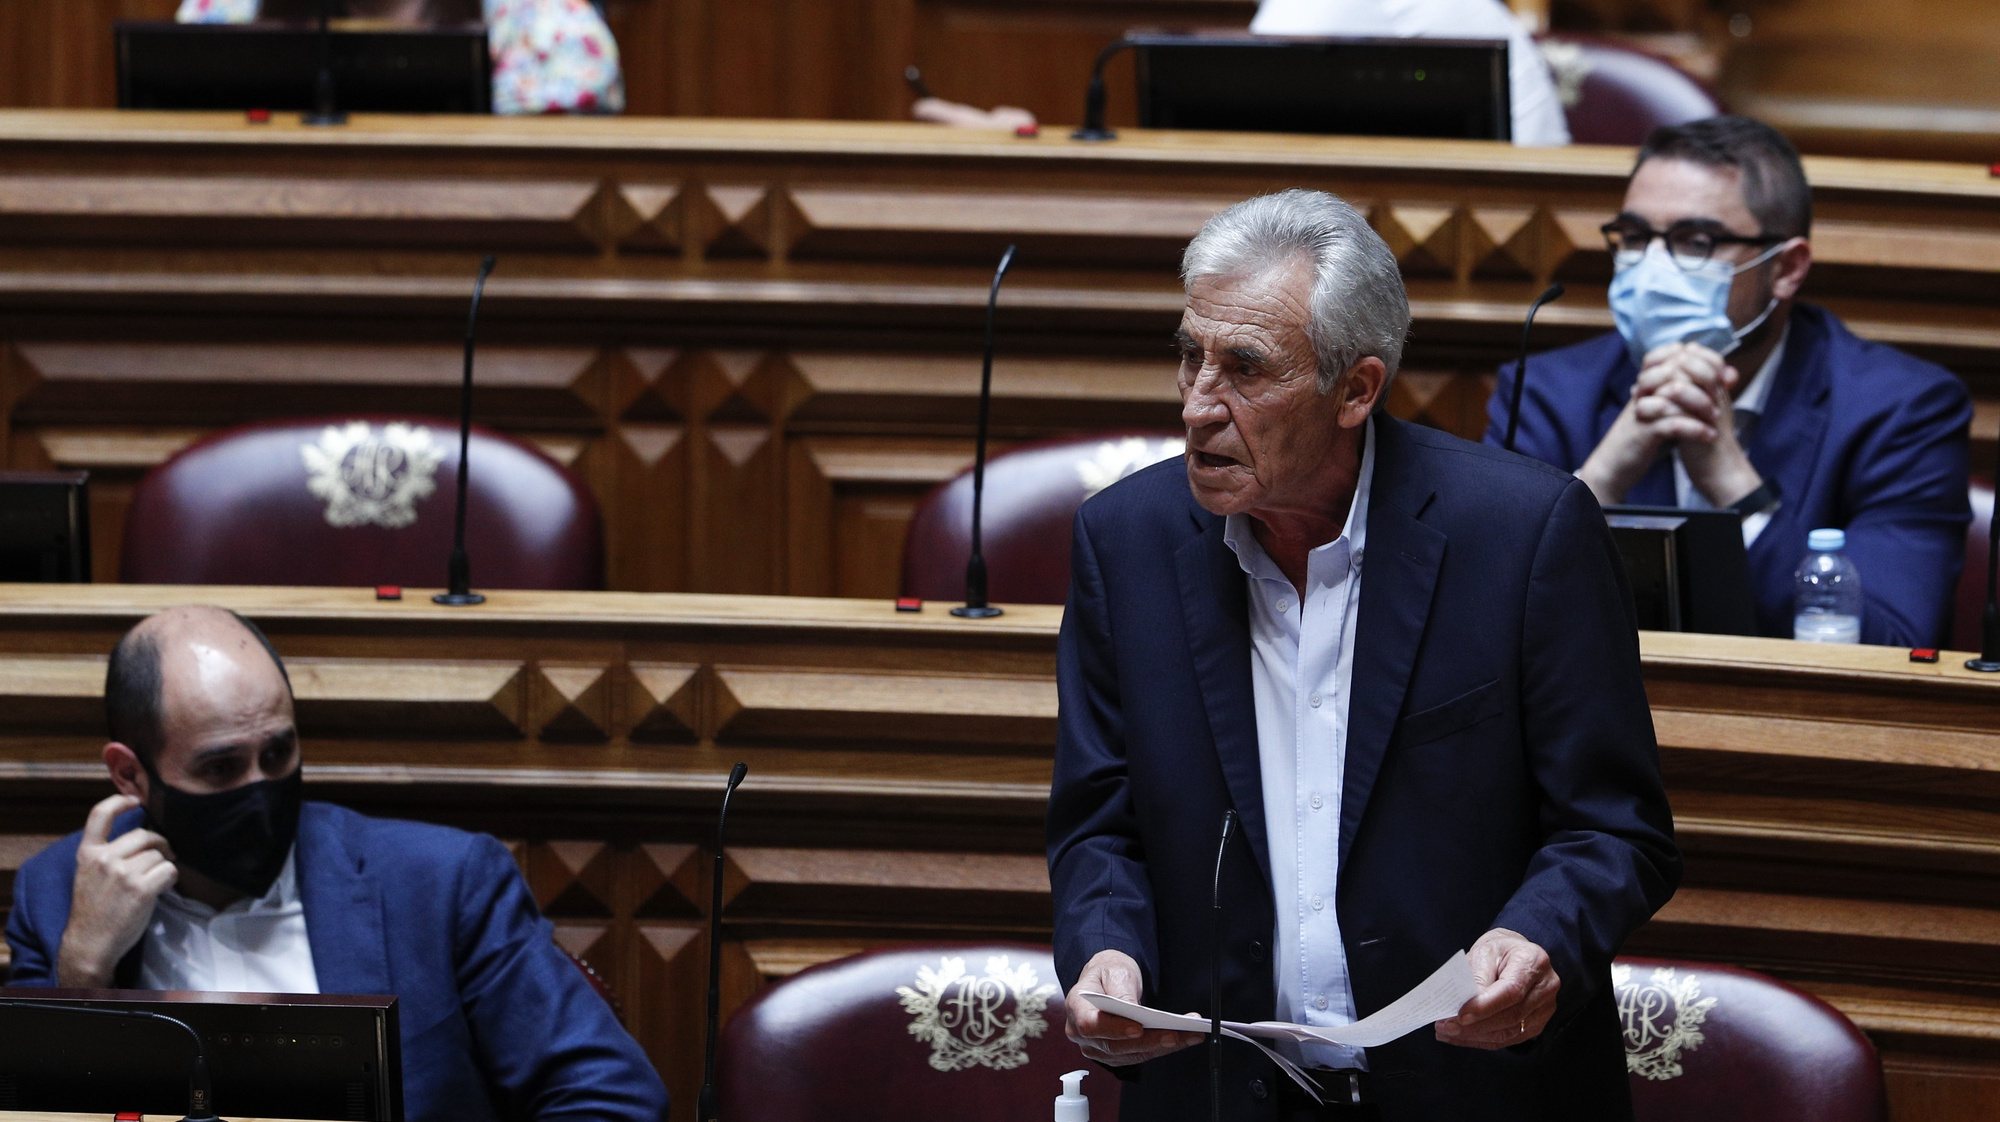 O secretário-geral do Partido Comunista Português (PCP), Jerónimo de Sousa, intervém durante o debate parlamentar sobre o estado da Nação, na Assembleia da República, em Lisboa, 21 de julho de 2021. ANTÓNIO COTRIM/LUSA